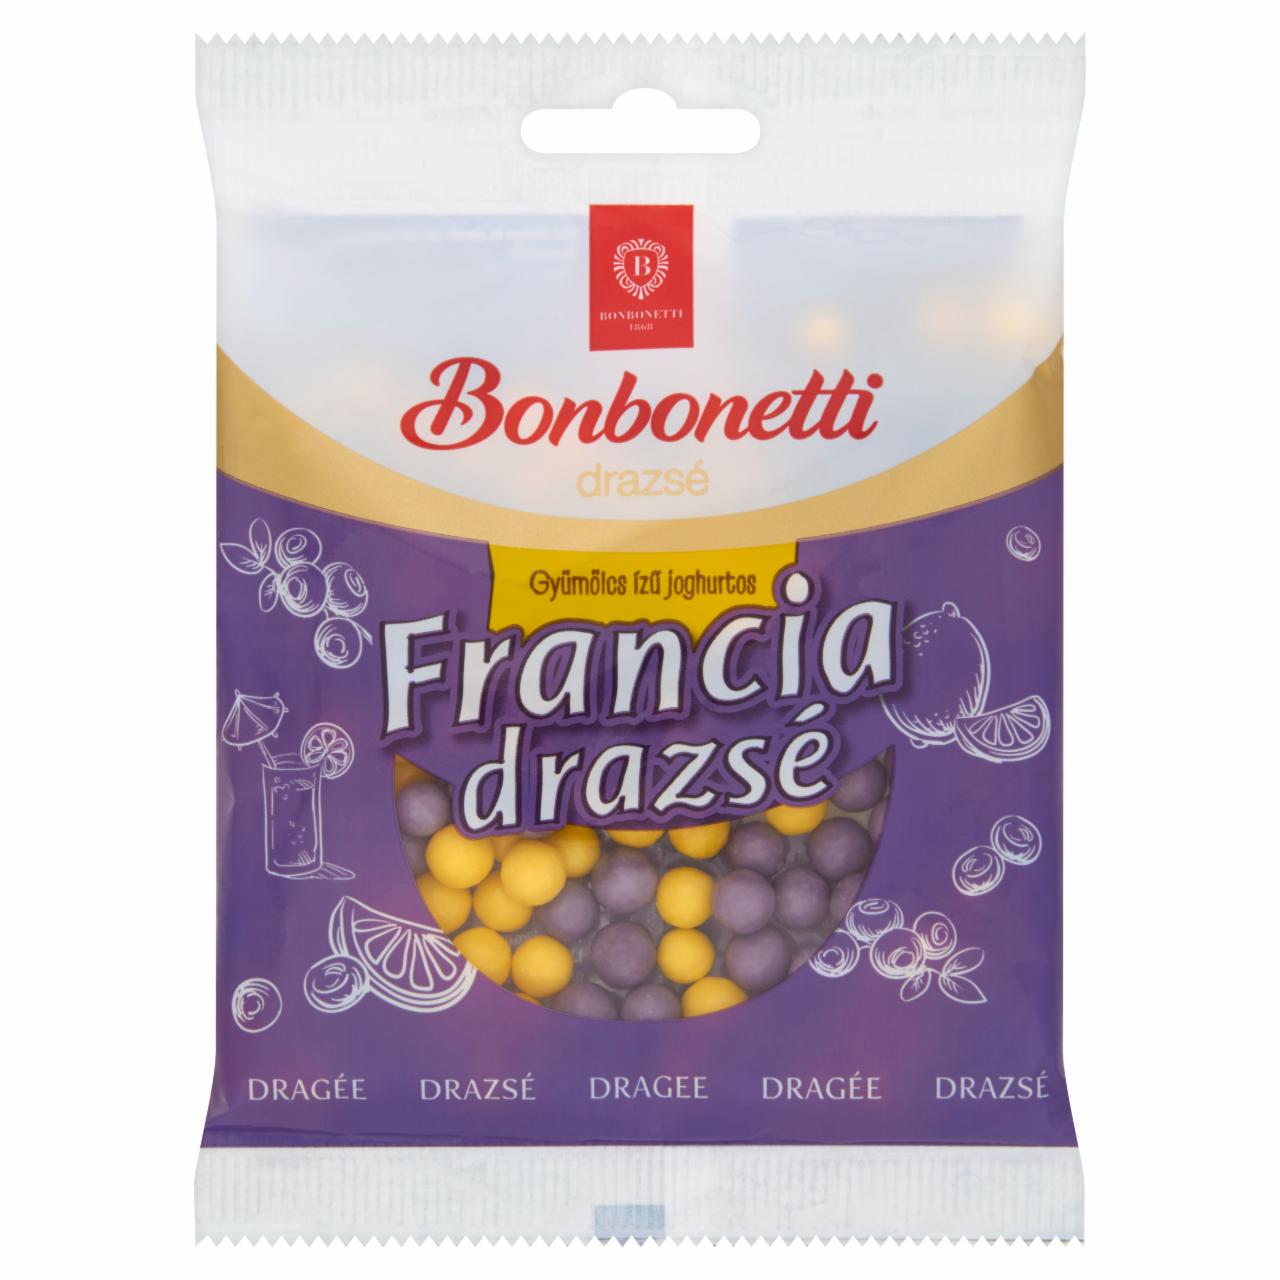 Képek - Bonbonetti gyümölcs ízű joghurtos francia drazsé 70 g